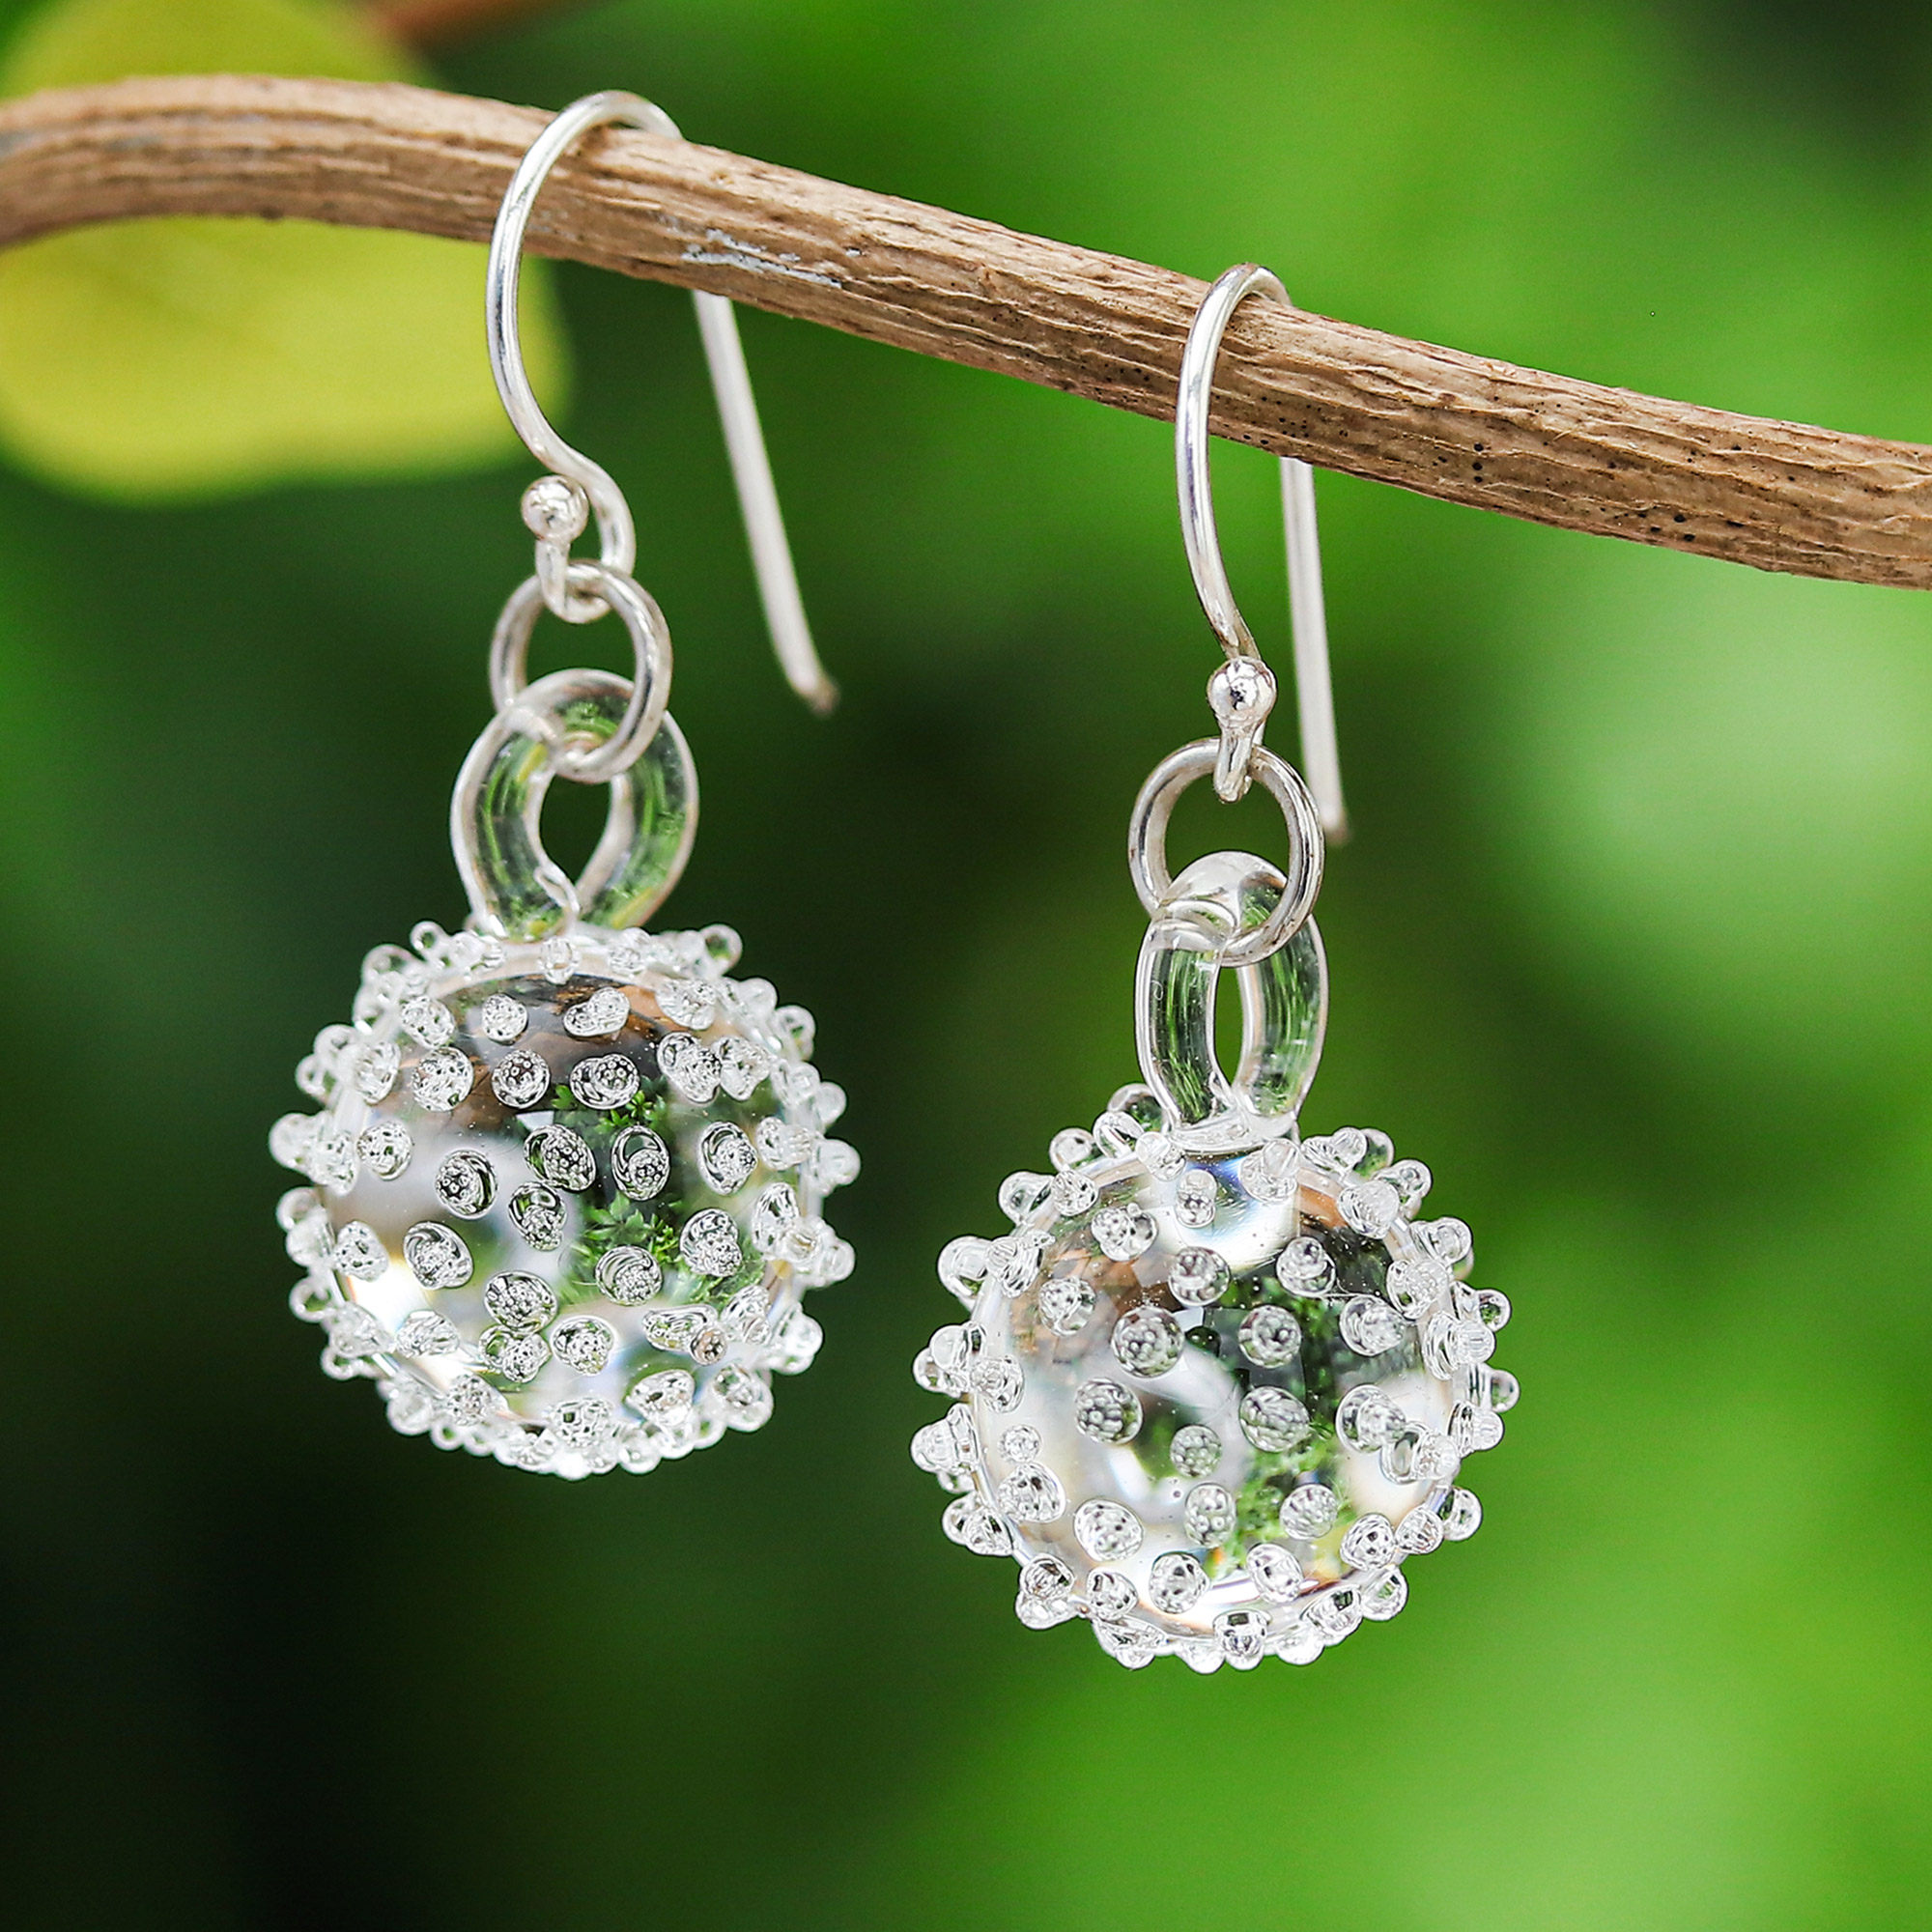 Shiny Crystal Ball Earrings | Zircon stud earrings, Pearl drop earrings  wedding, Crystal pearl earrings